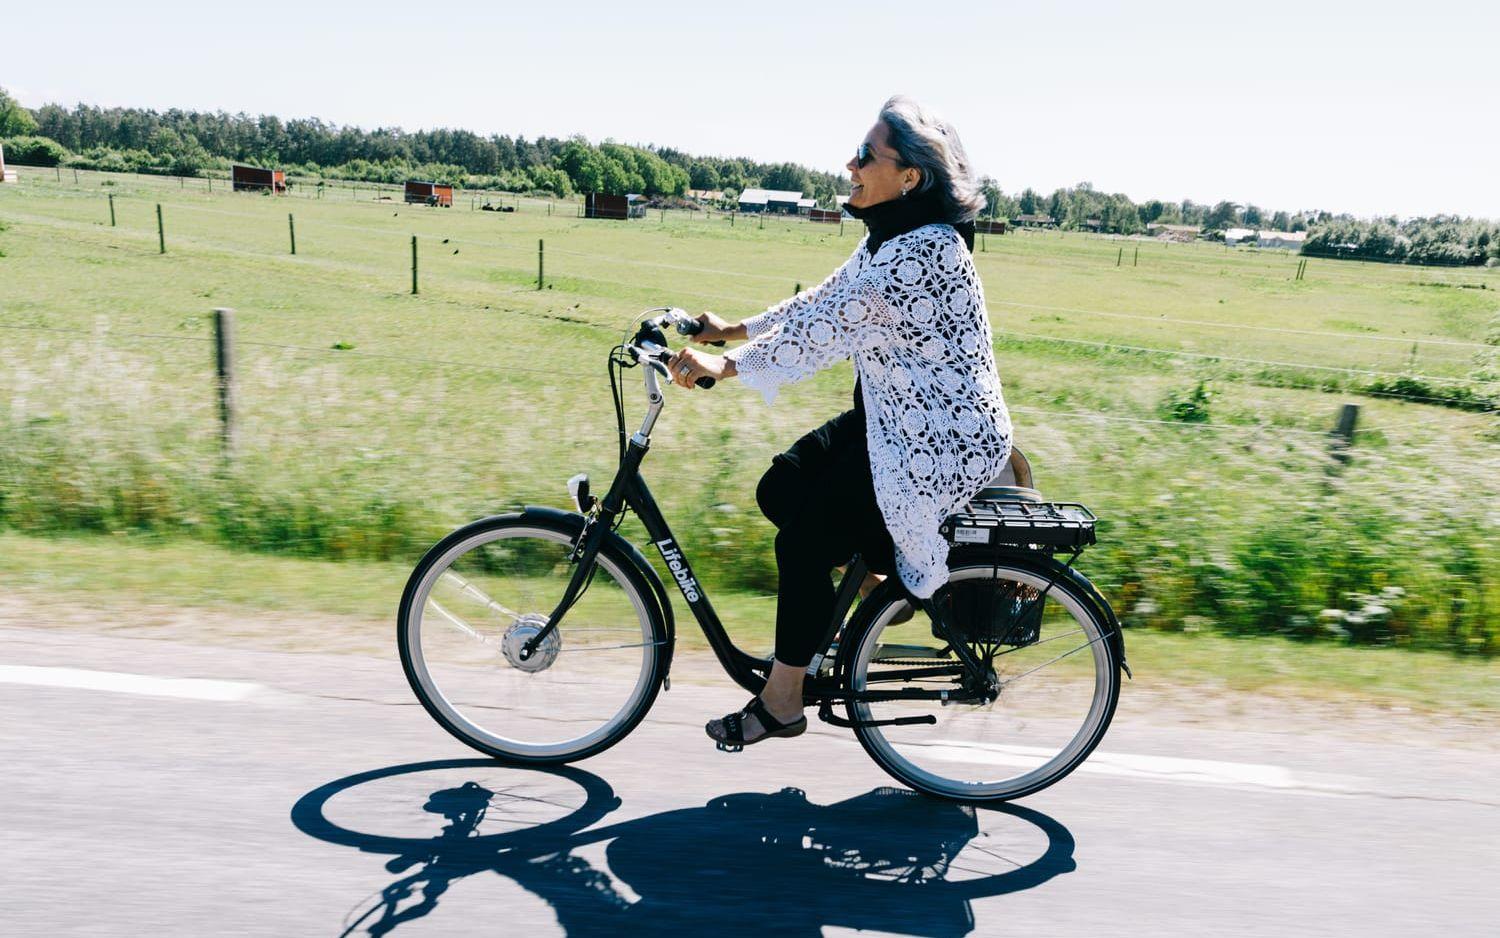 Att skaffa elcykel var ett bra beslut, tycker Heléne och Micael. ”På cykel kan man uppleva så mycket och det är härligt att kunna ta sig längre sträckor”, tycker Heléne. Bild: Anders Andersson